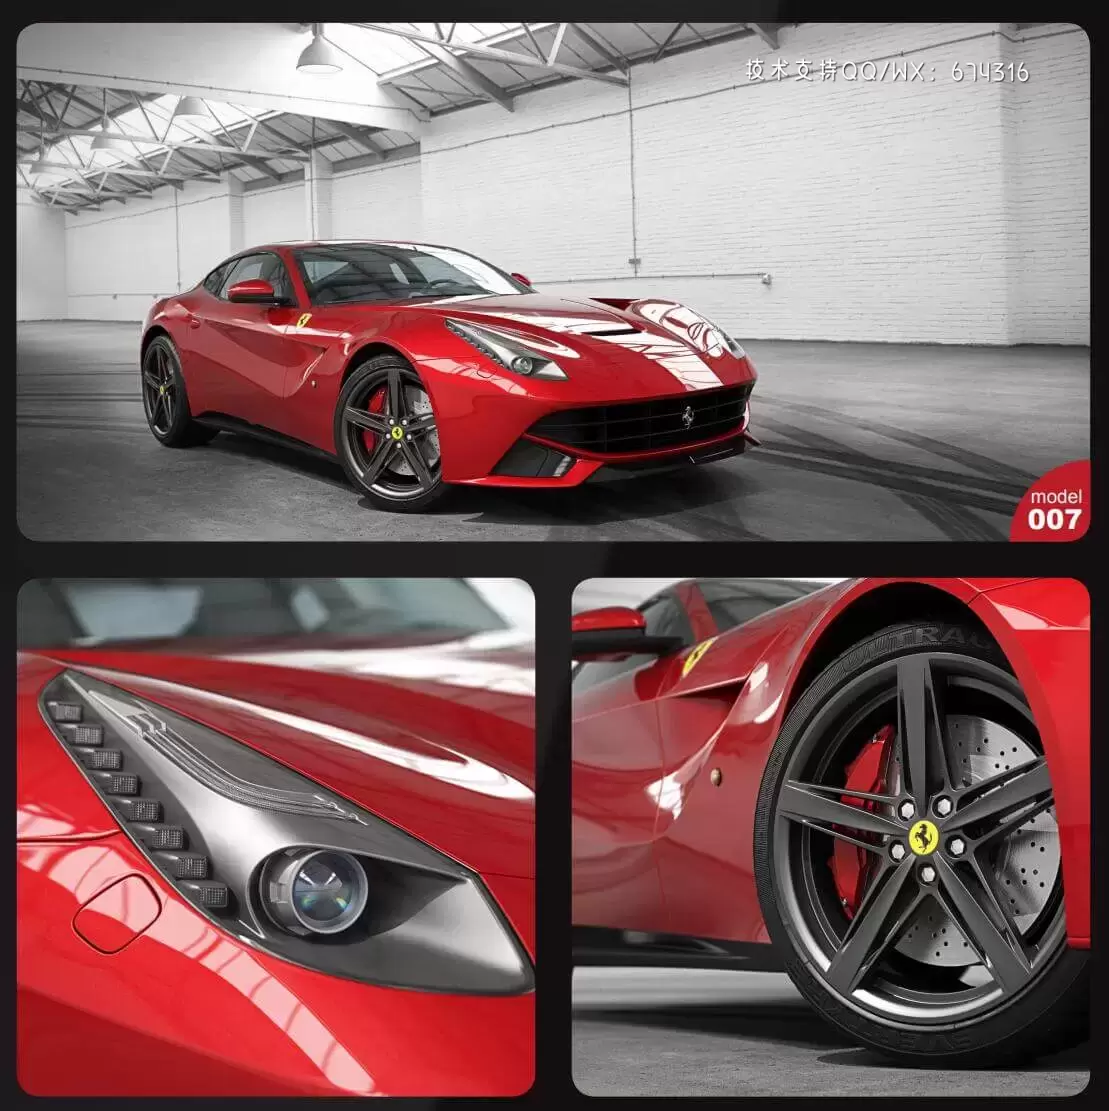 法拉利 Ferrari高端汽车3D模型下载 (C4D,FBX,OBJ,MAX)免费下载